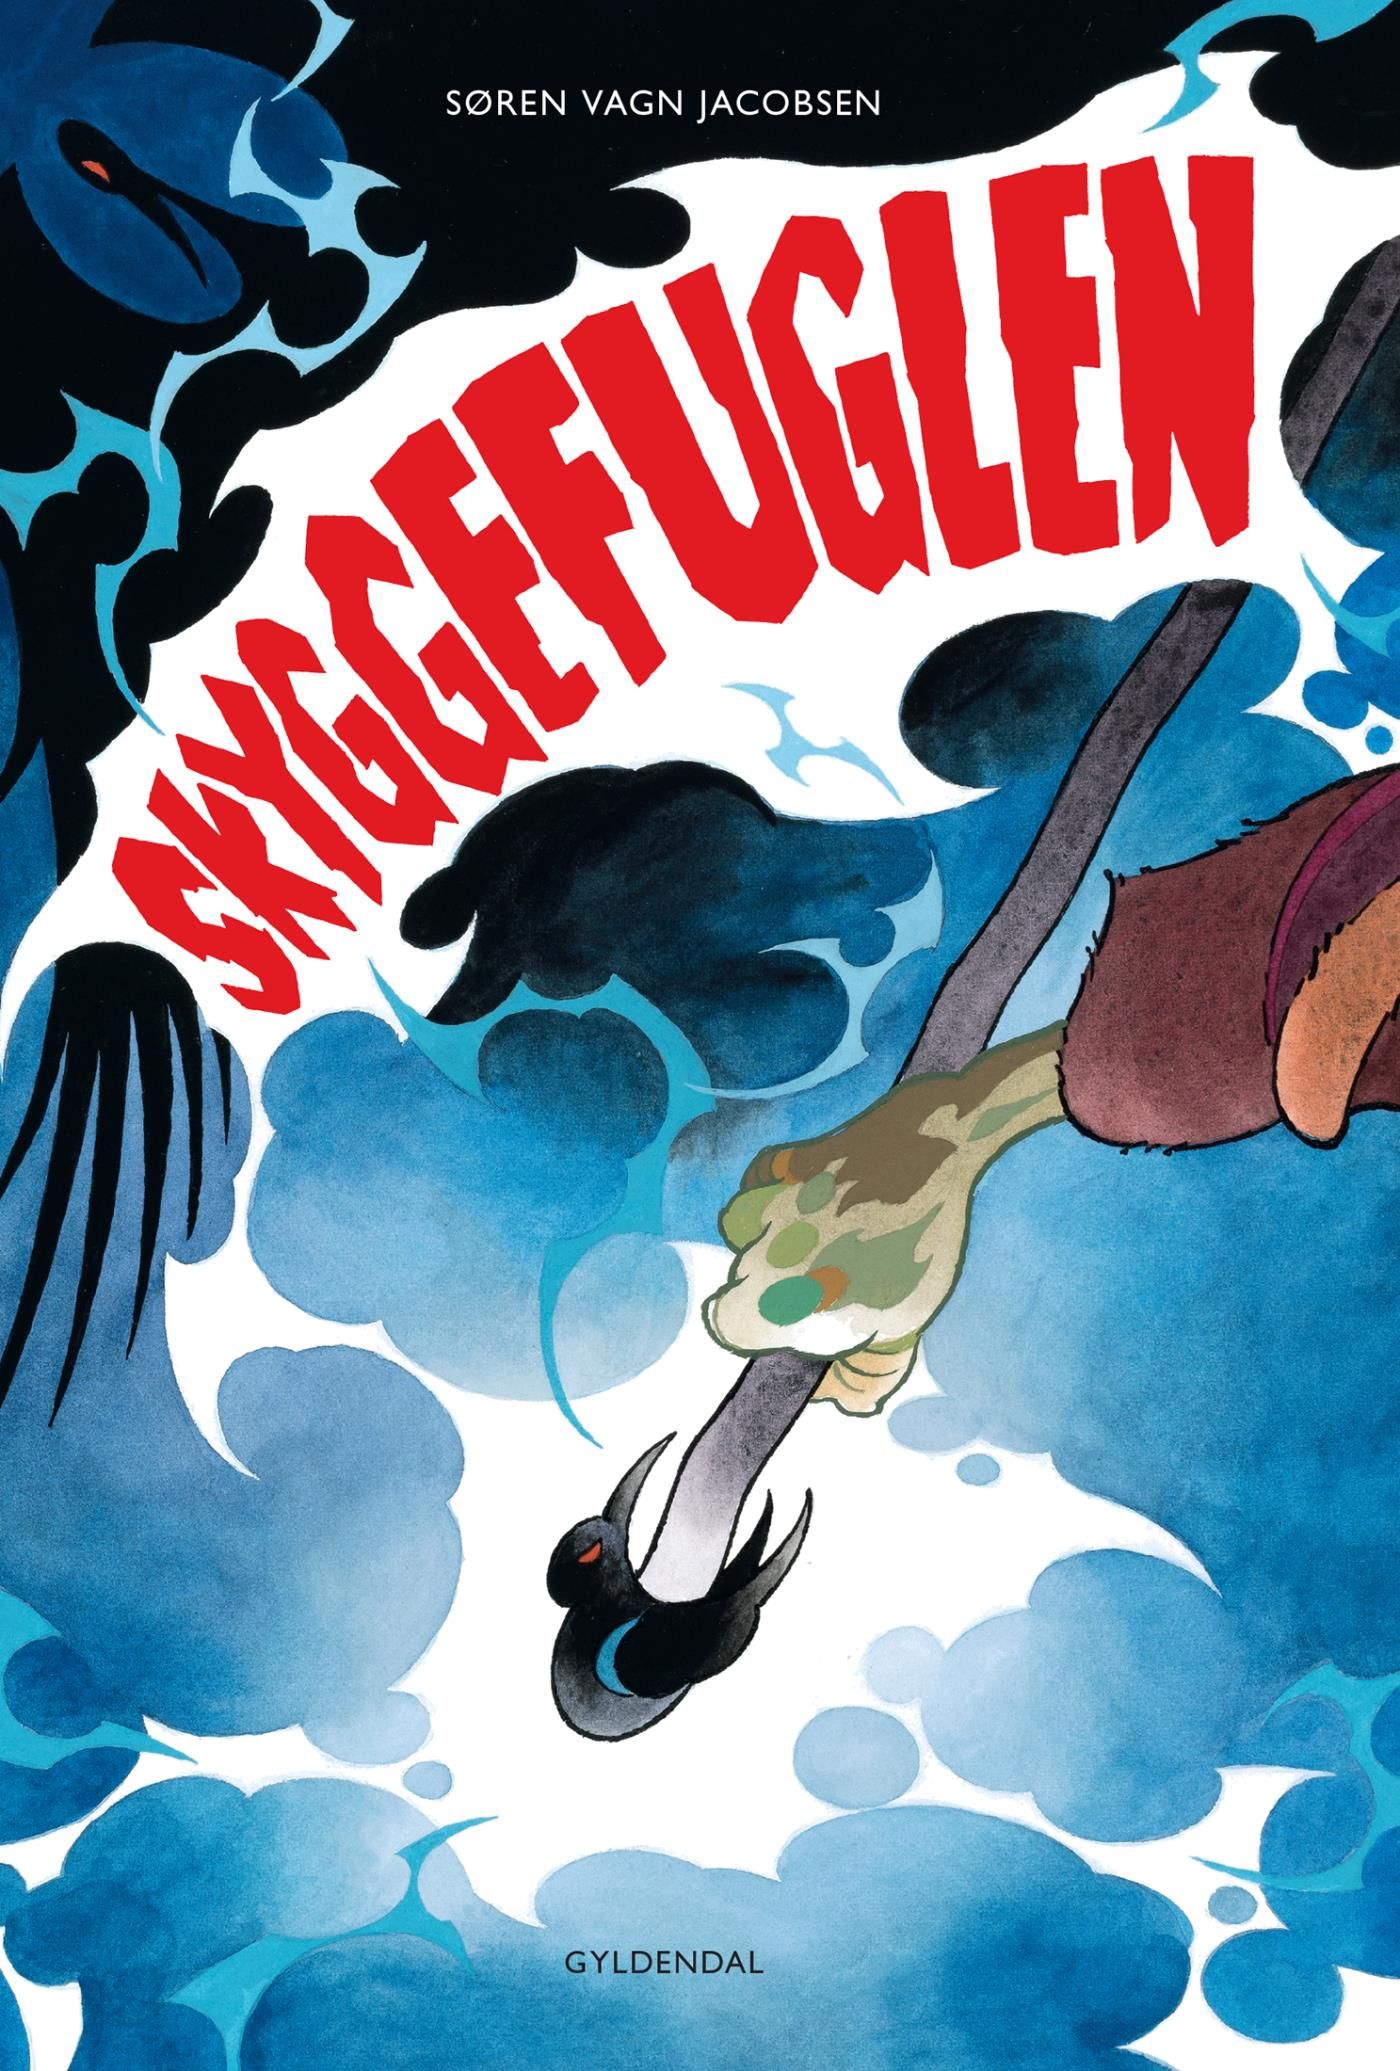 Skyggefuglen, e-bok av Søren Vagn Jacobsen